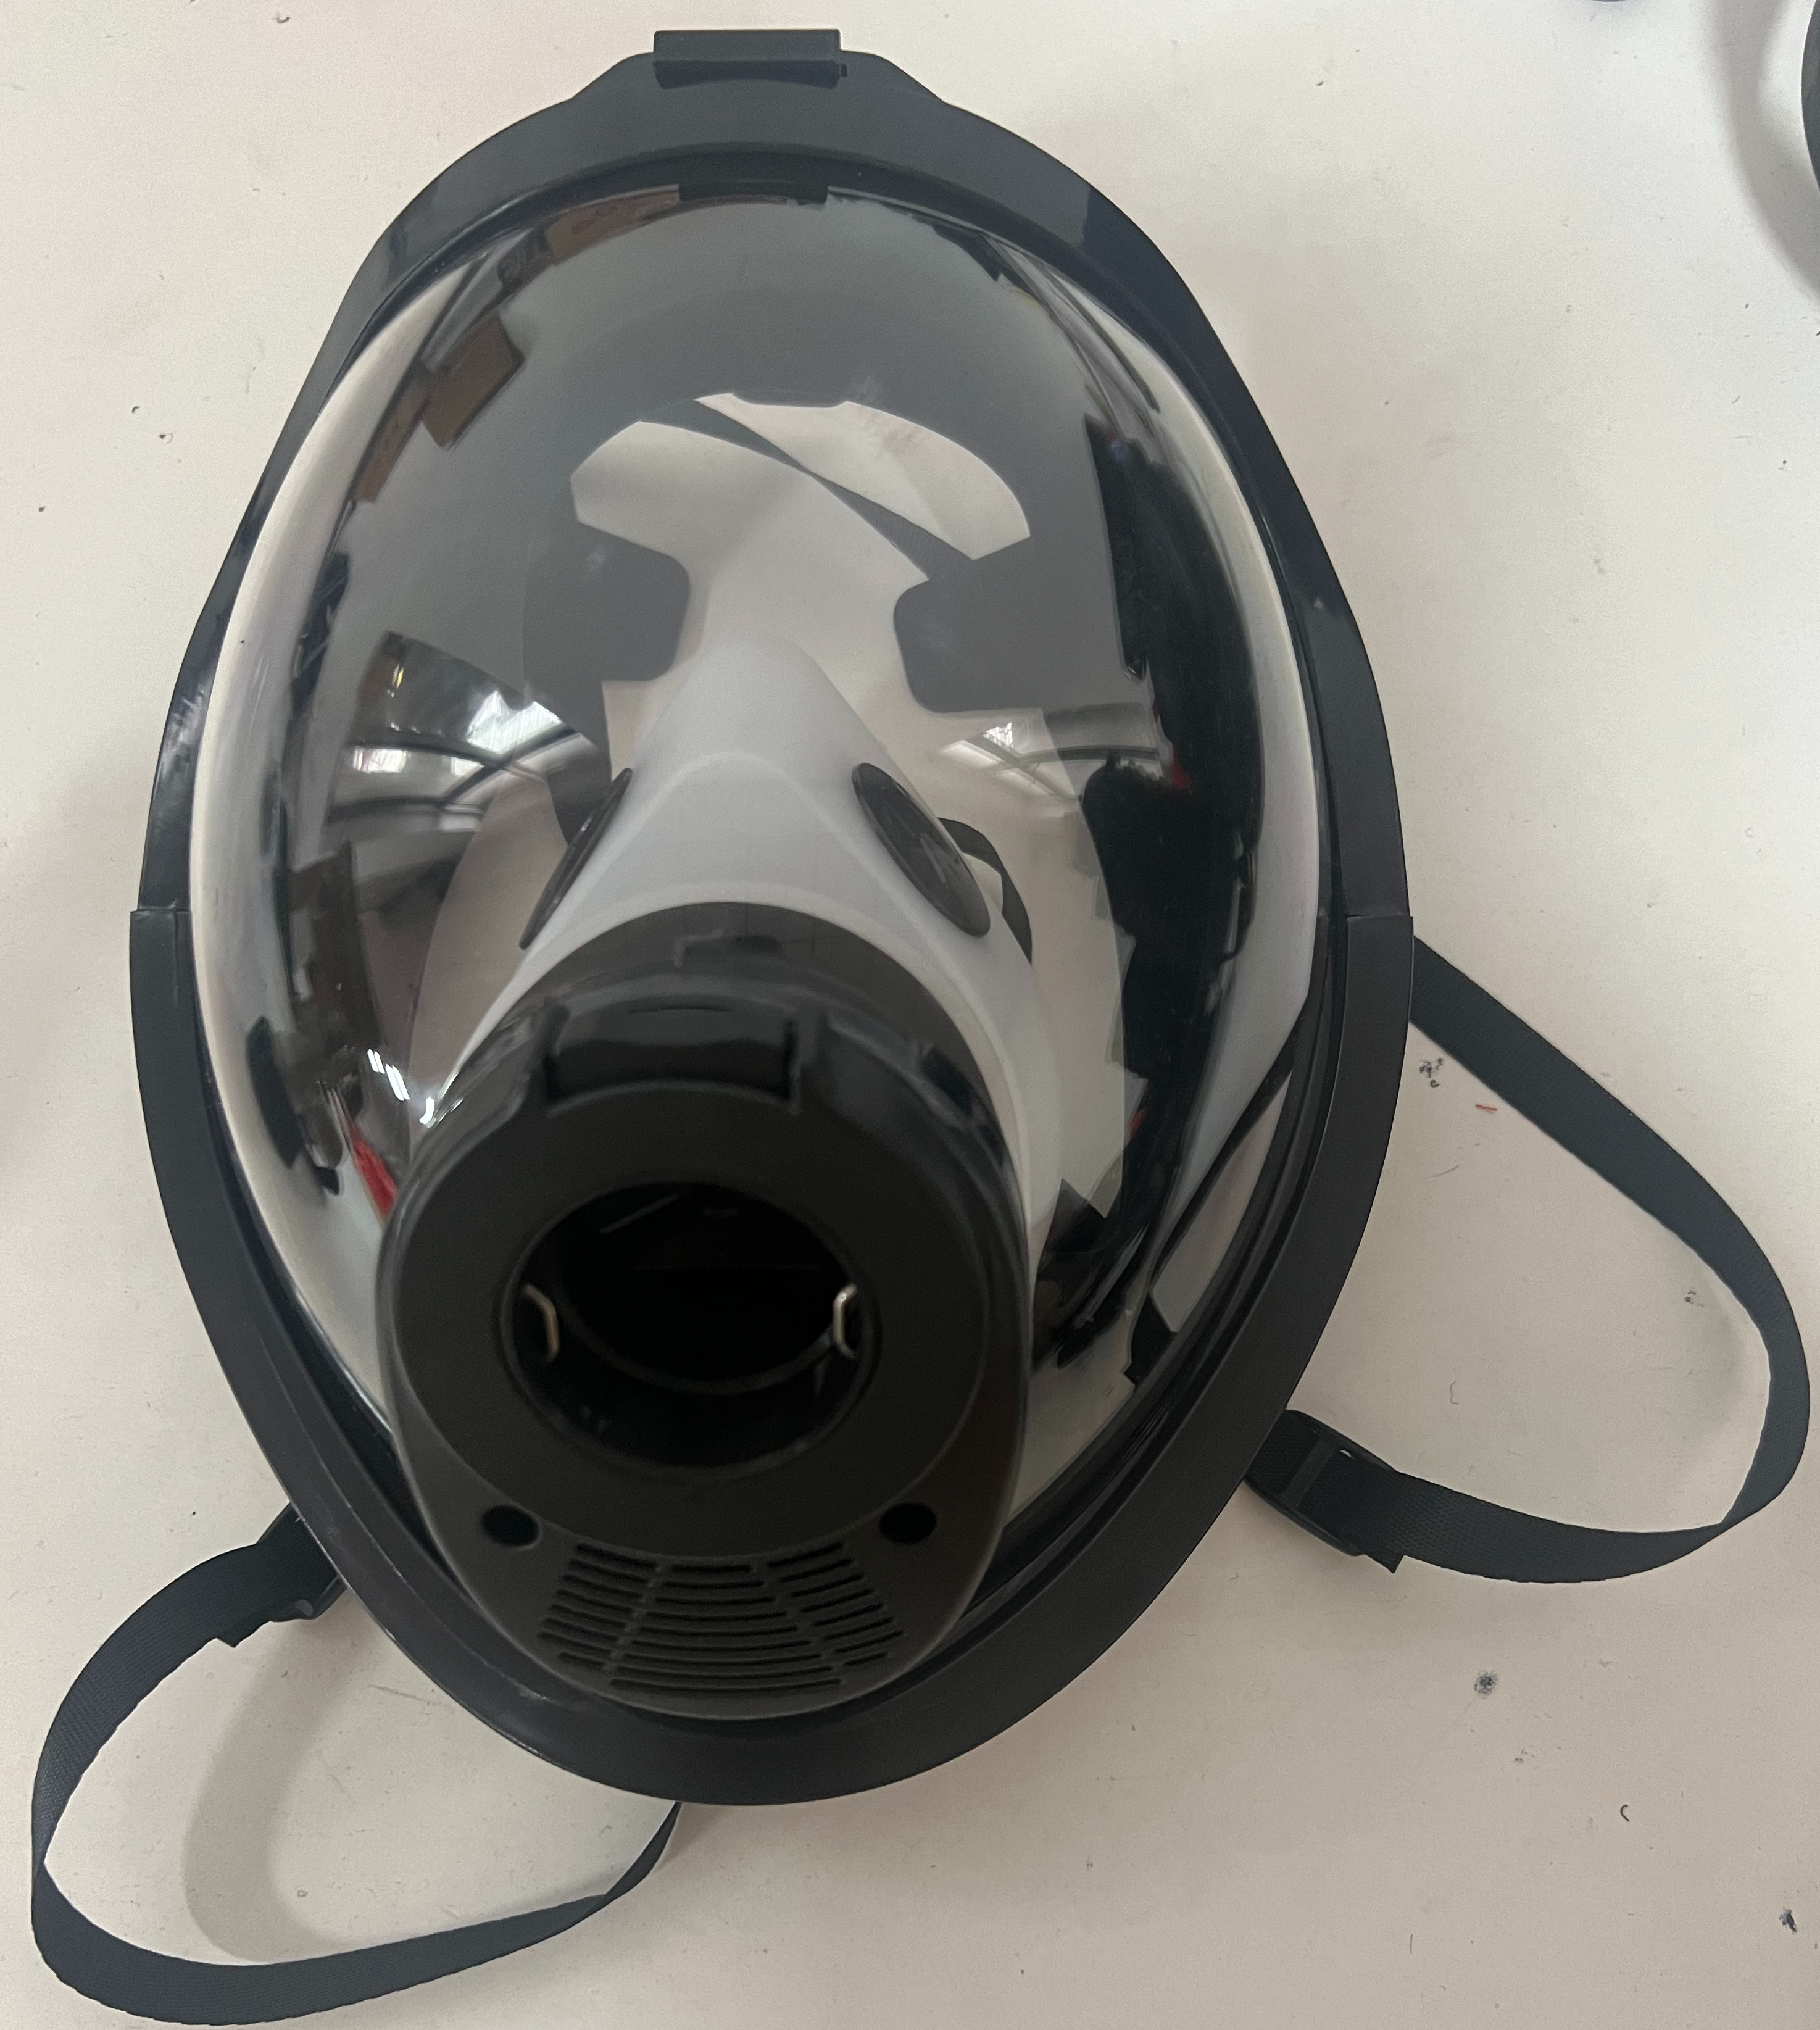 Full Face Mask for SCBA